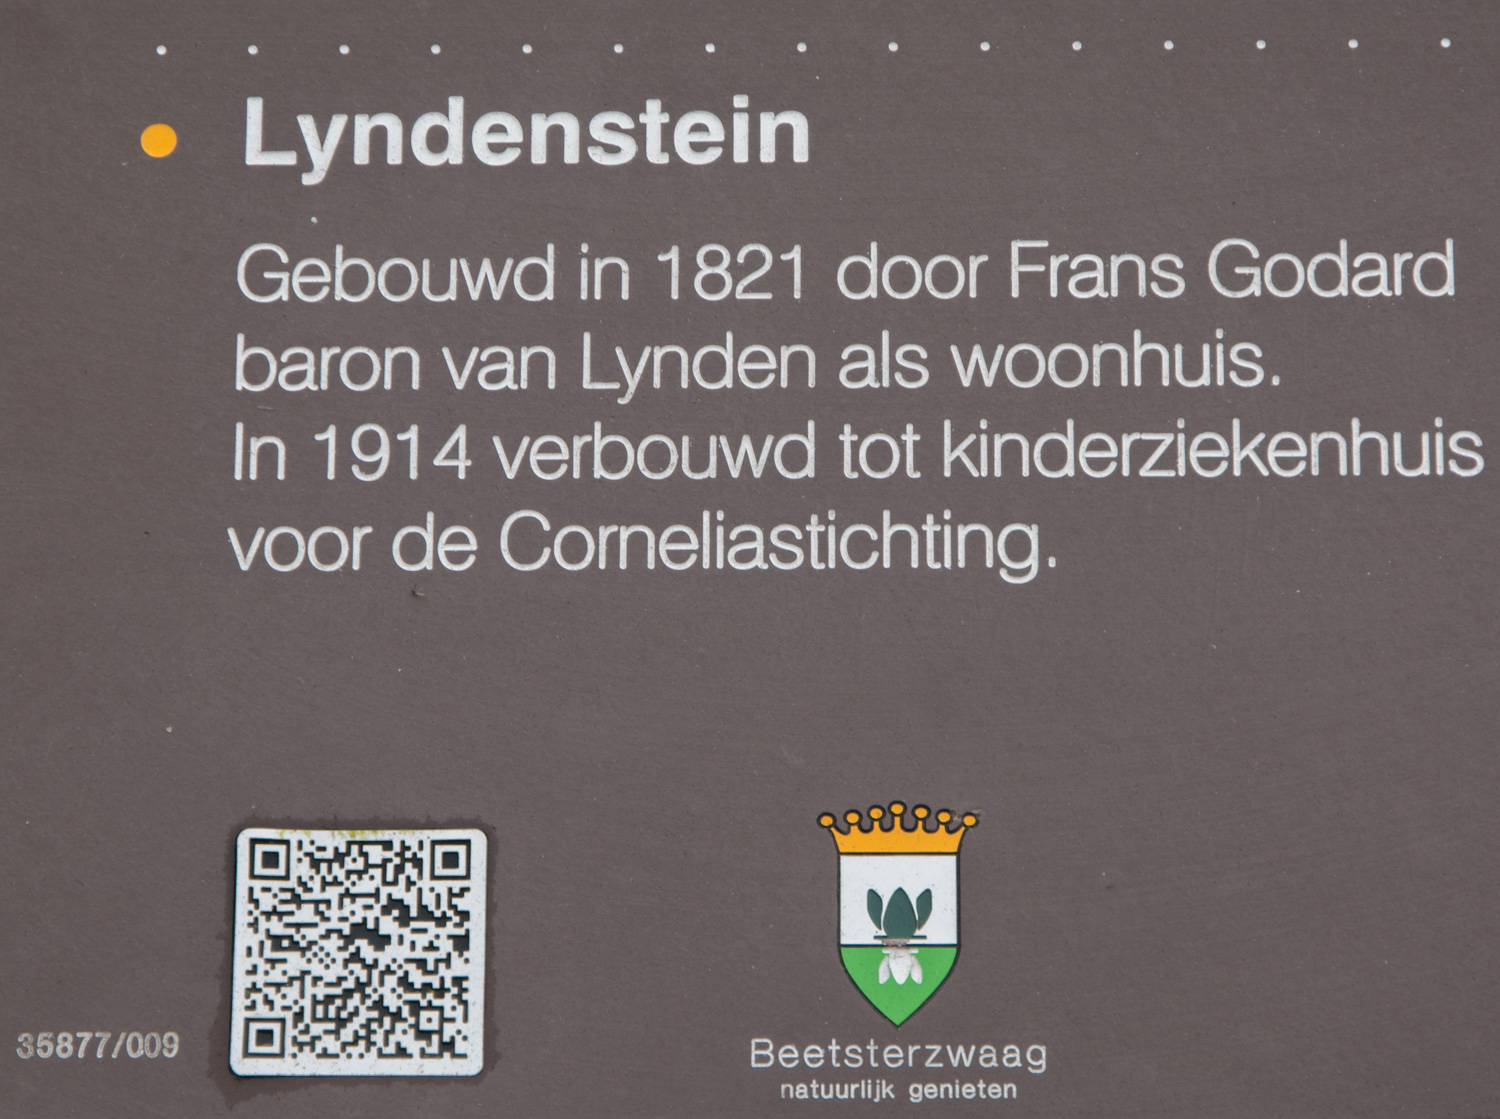 85-info-lyndenstein